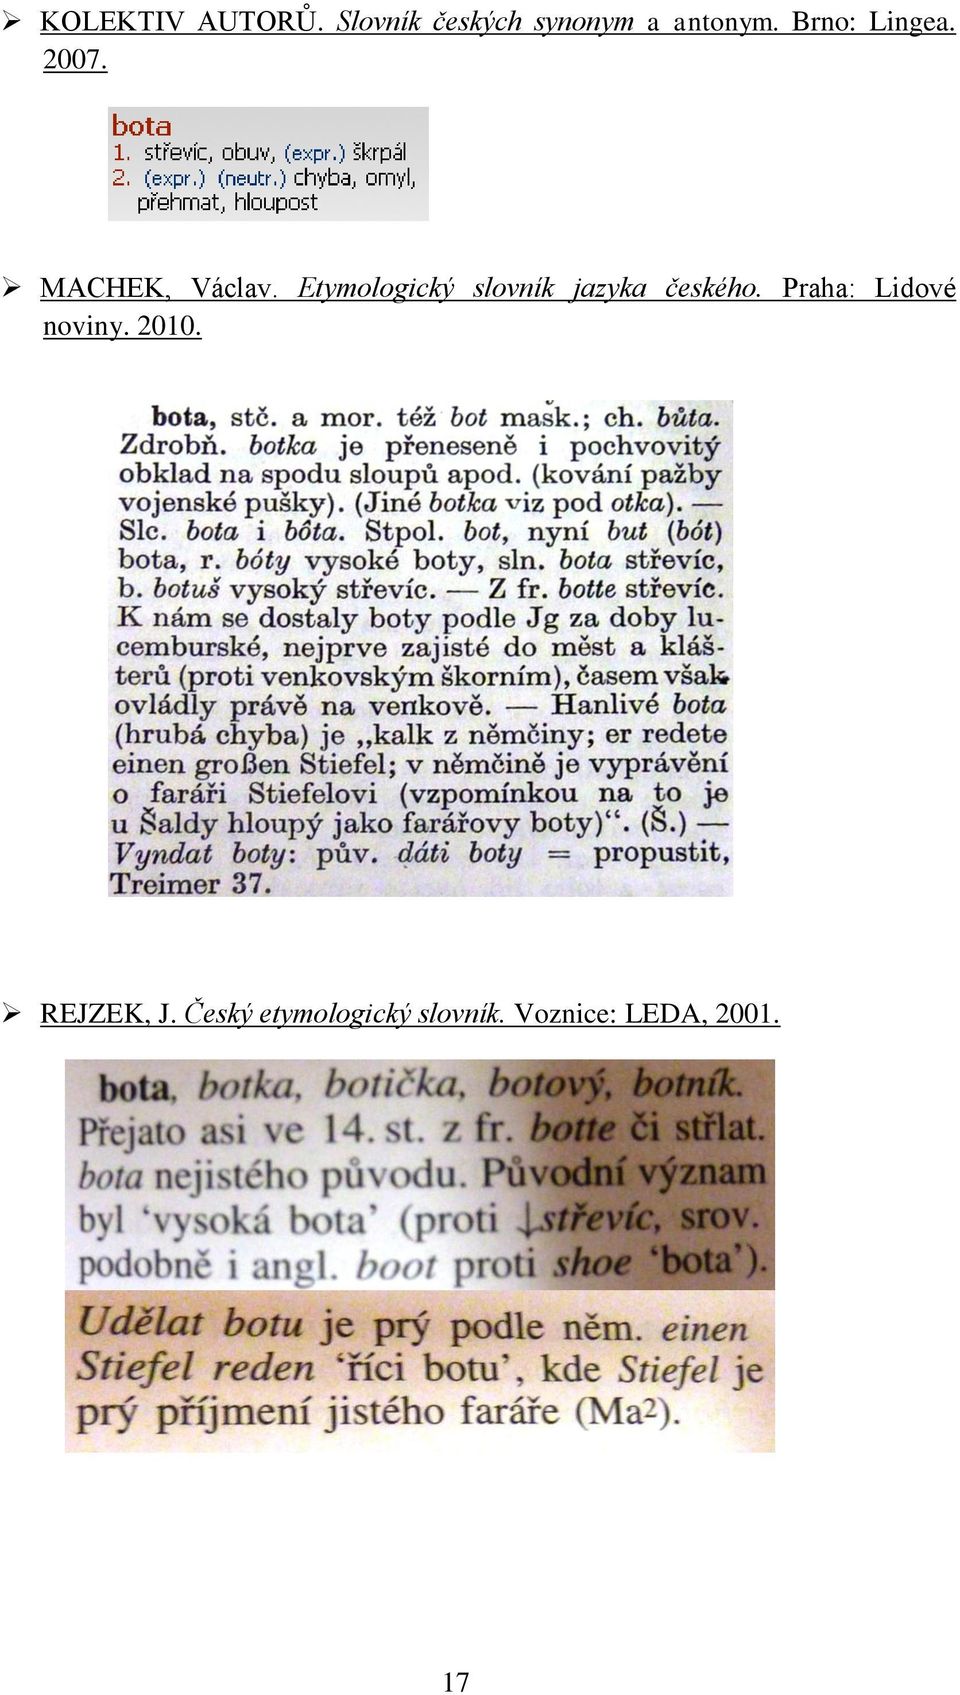 Etymologický slovník jazyka českého.